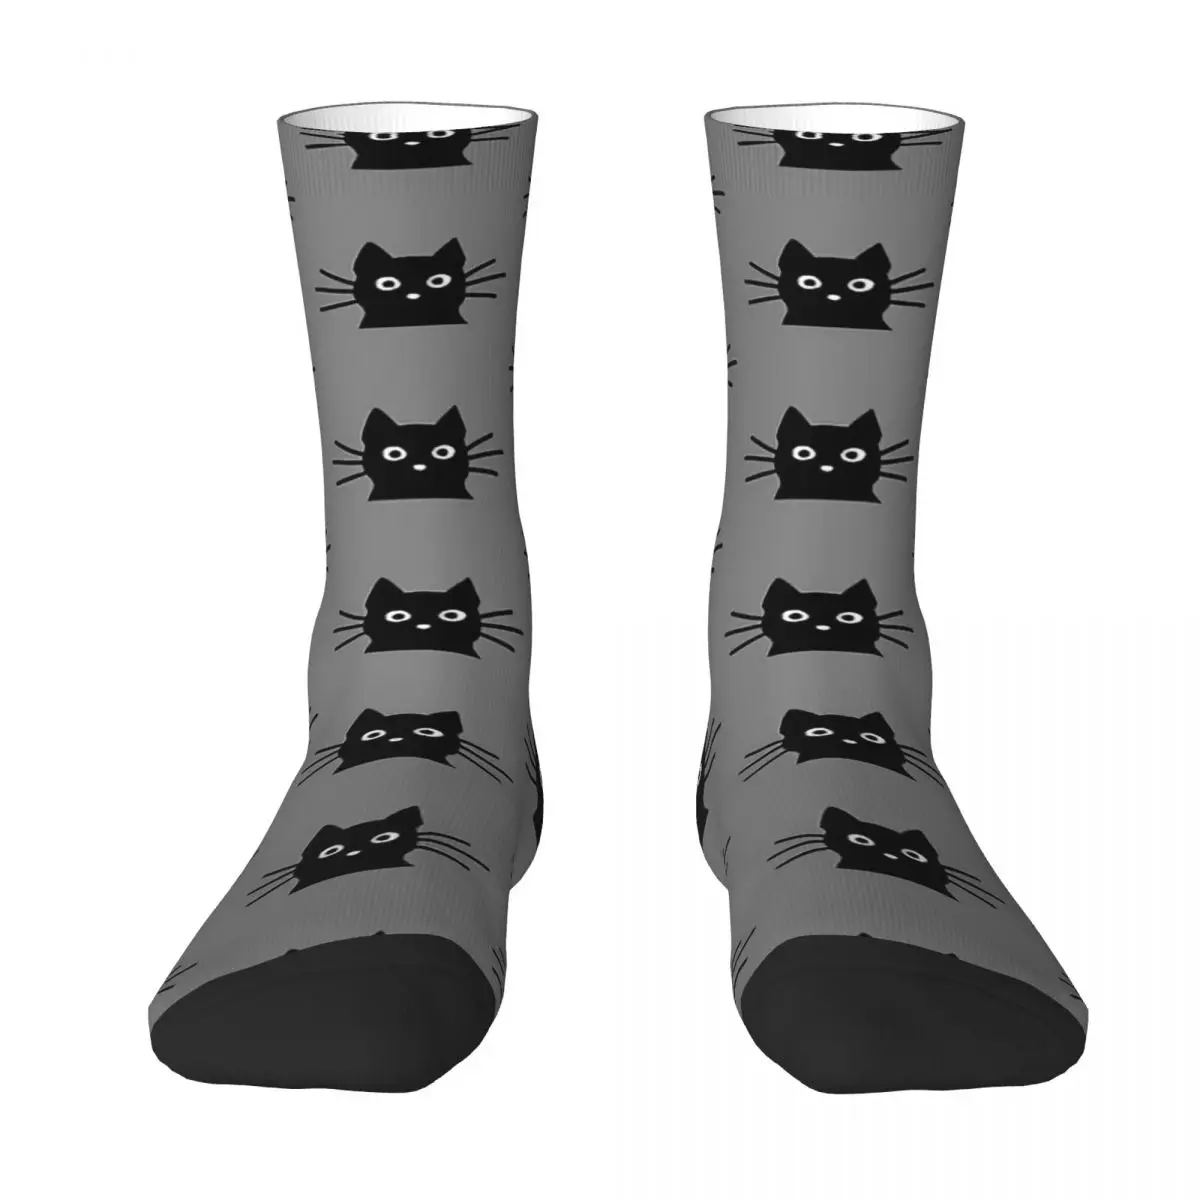 Black Cat Face Adult Socks,Unisex socks,men Socks women Socks